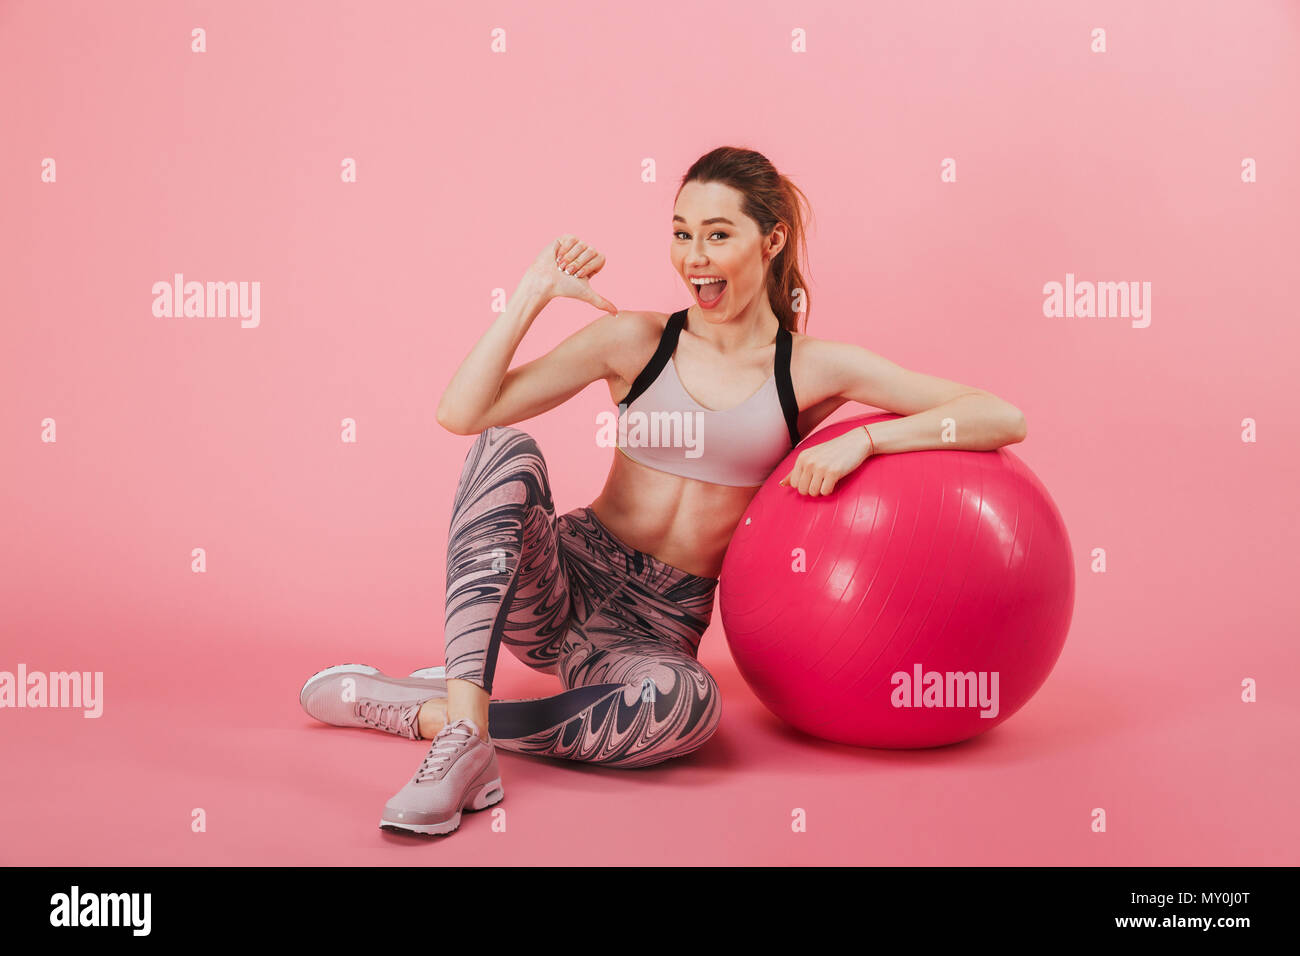 Gerne Sportlerin sitzen auf dem flloor mit Fitness Ball während Zeigt an sich, und wenn man die Kamera über rosa Hintergrund Stockfoto